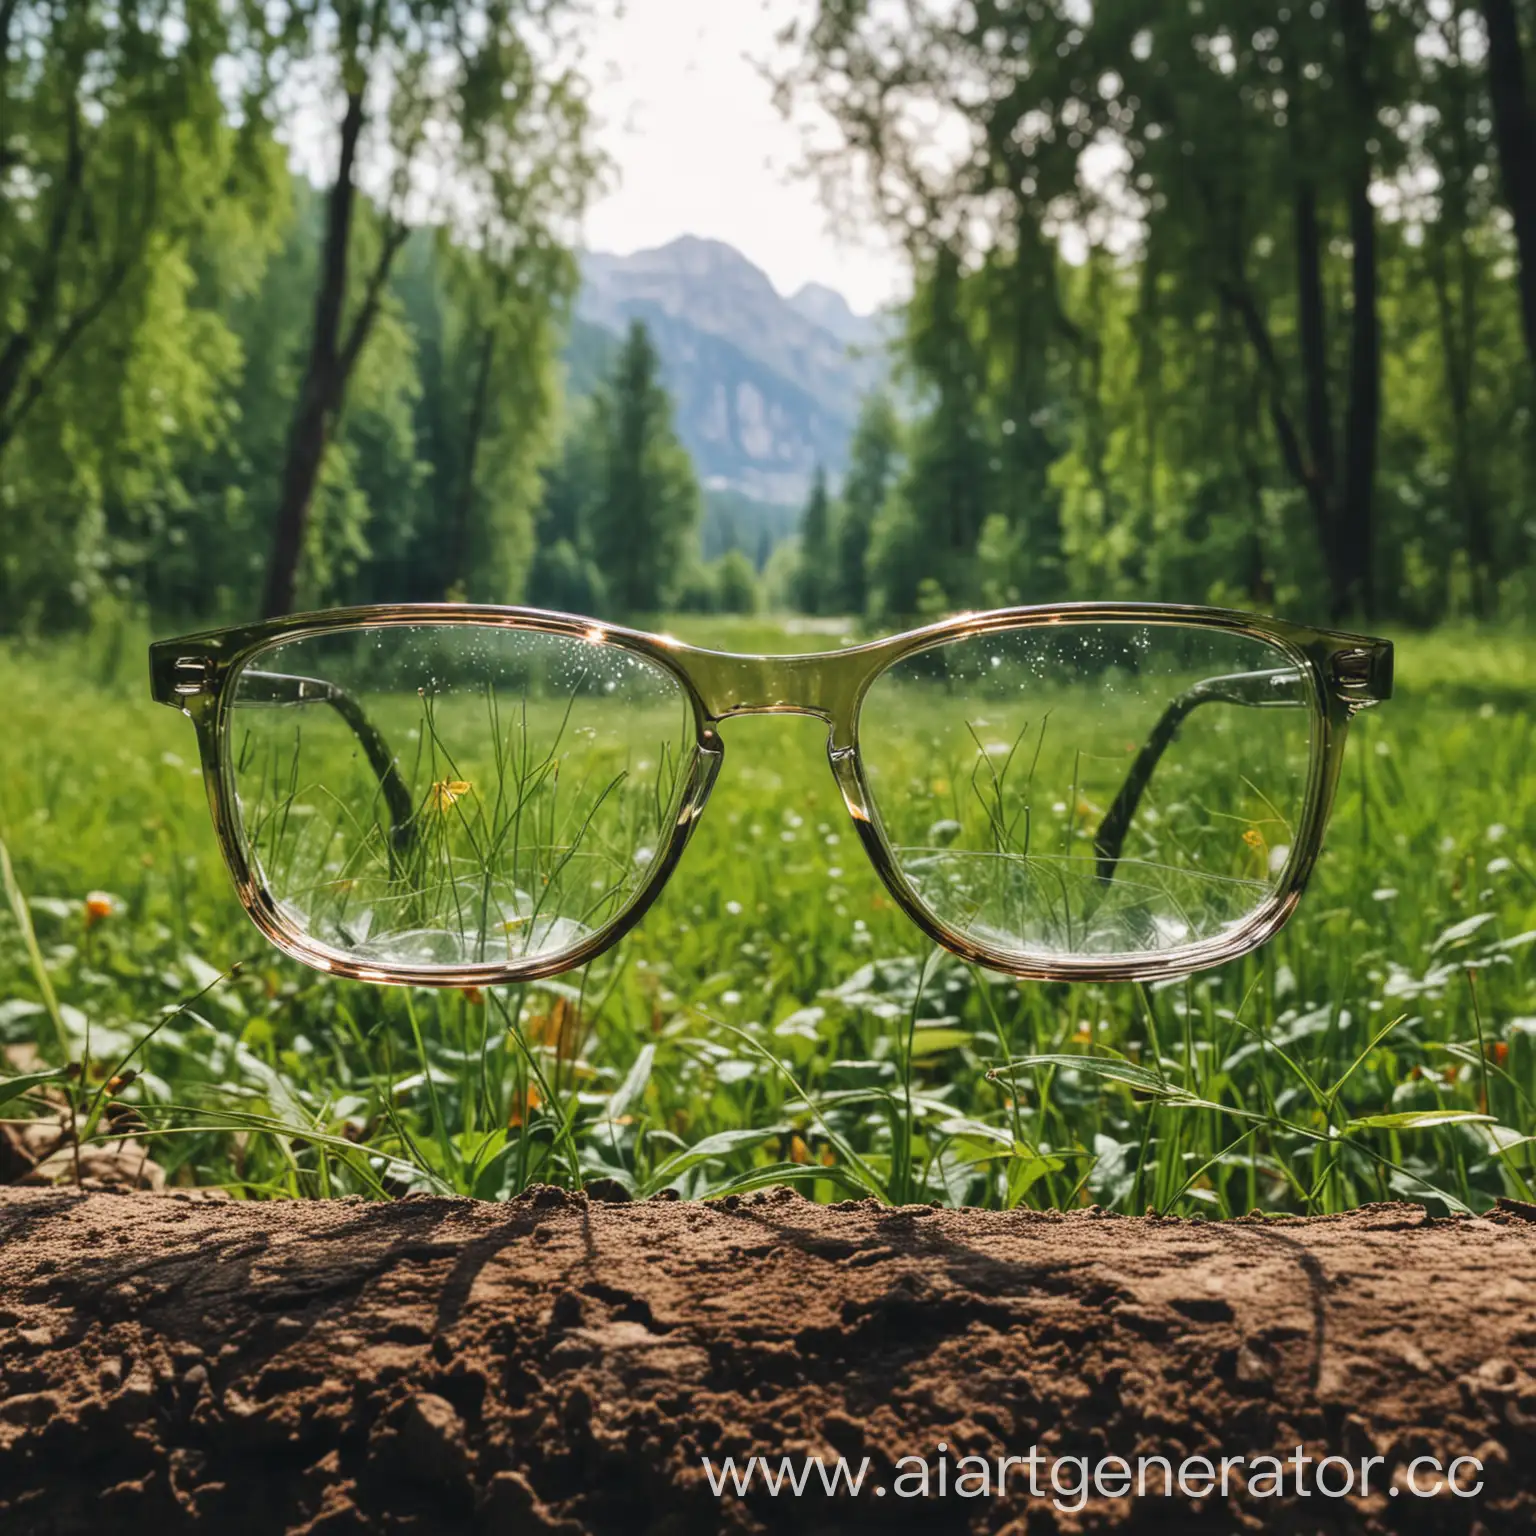 Stylish-Glasses-Frames-Set-Against-Natural-Landscape